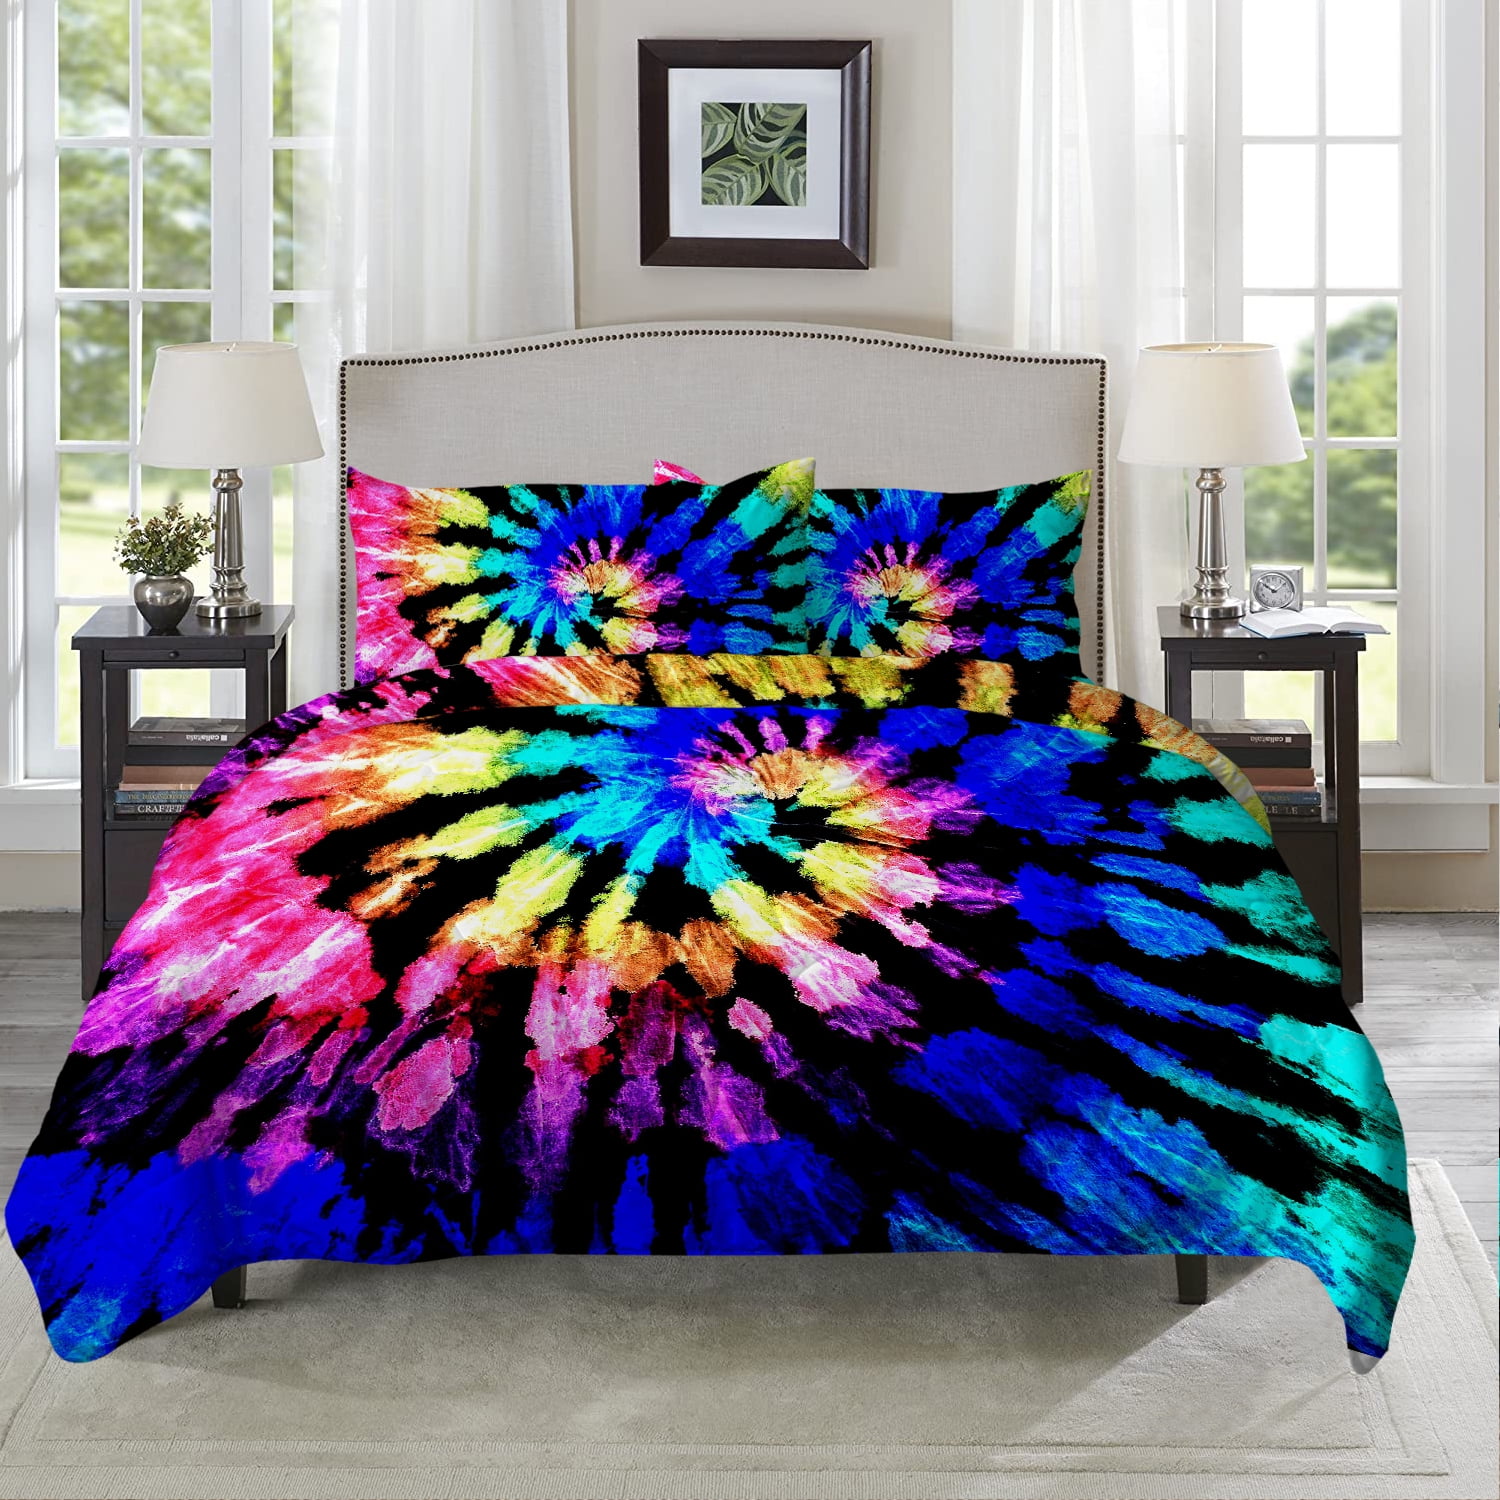 Comforter set for Teens girls Full size Bedding Set 